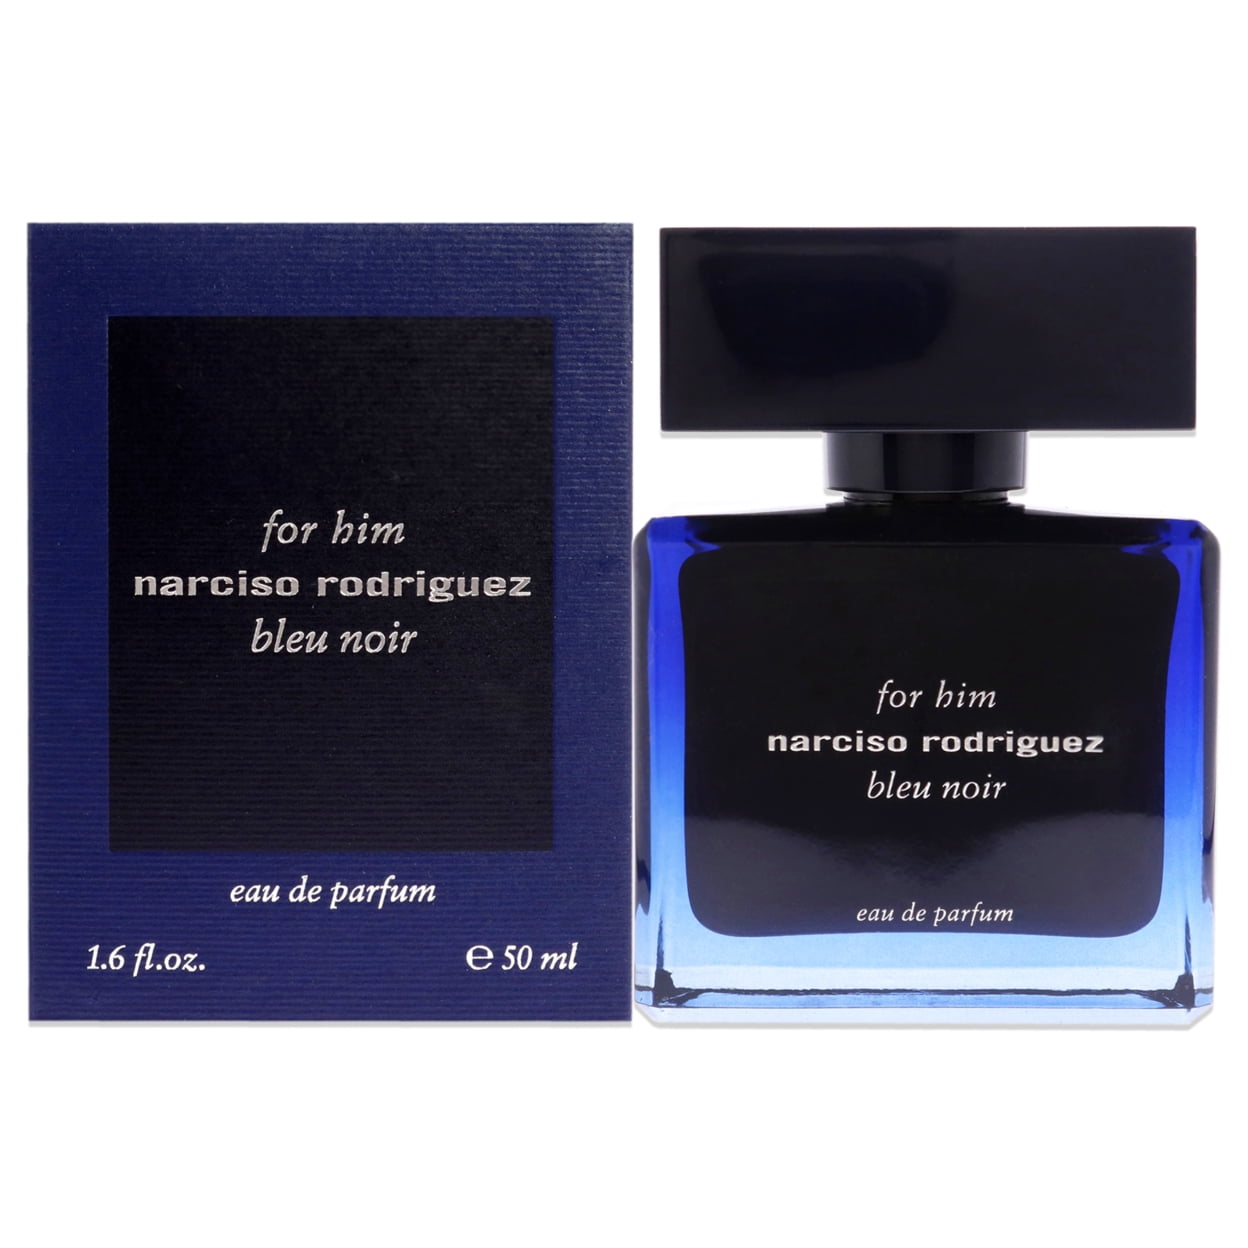 narciso rodriguez bleu noir eau de parfum